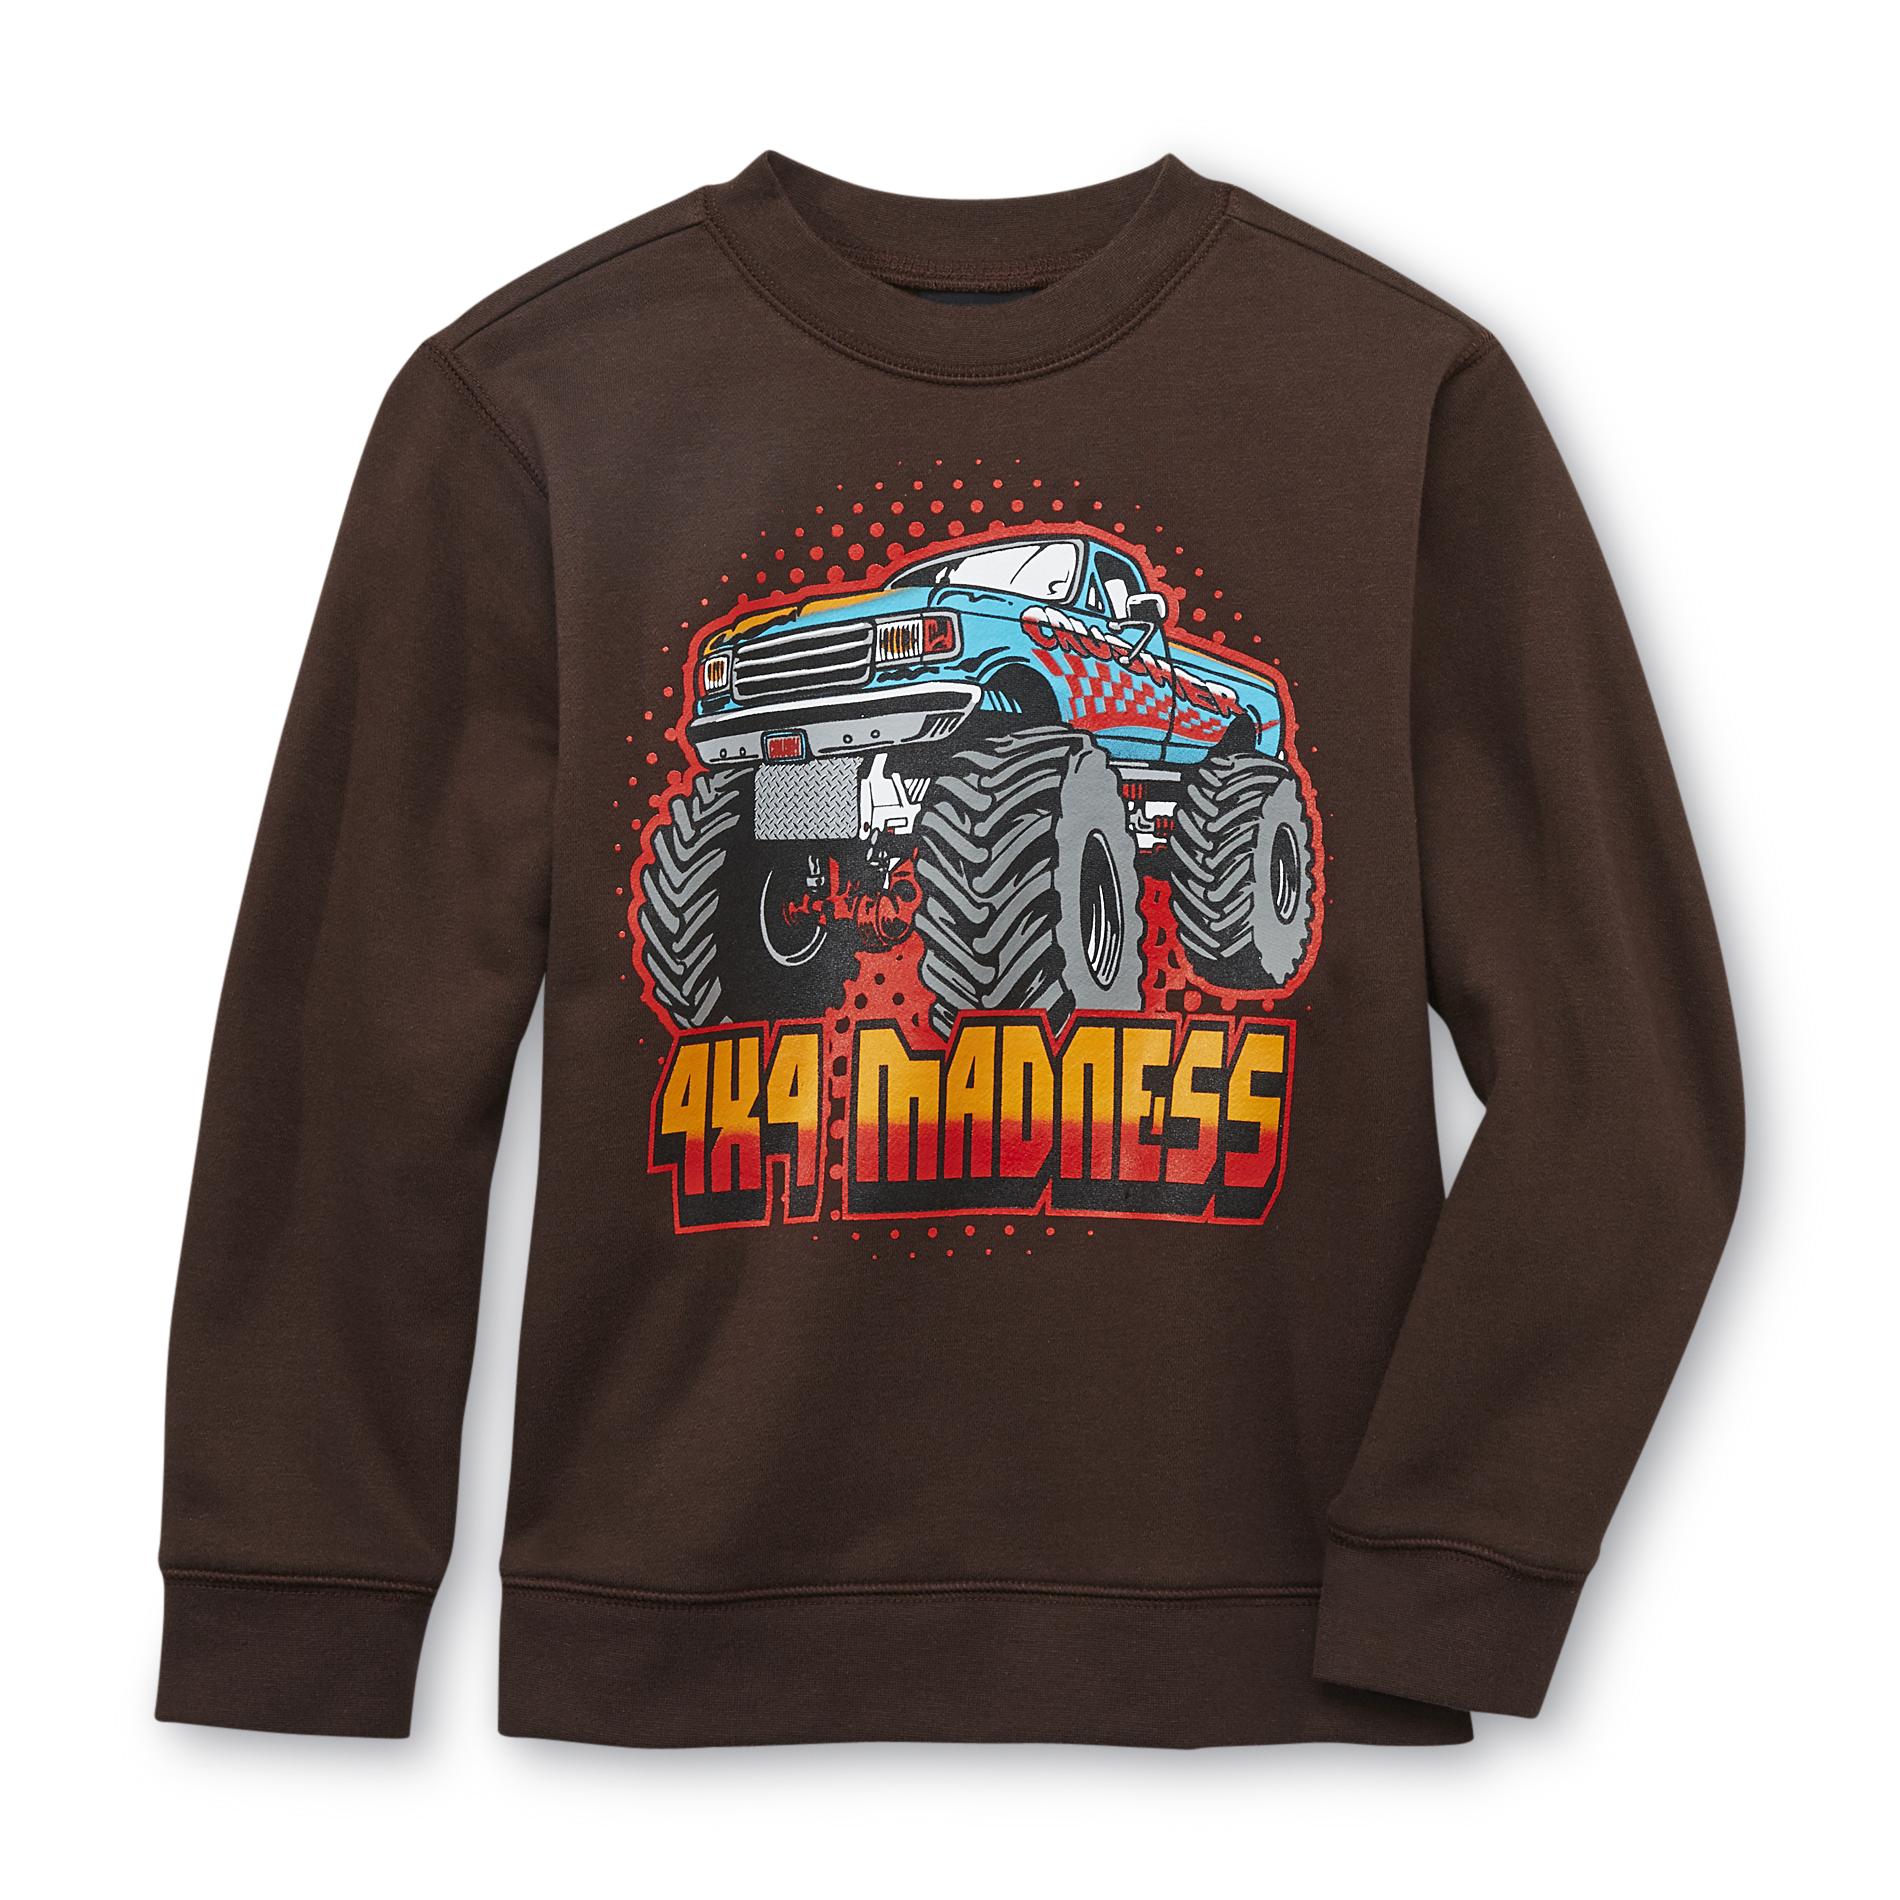 Joe Boxer Boy's Graphic Sweatshirt - Monster Truck